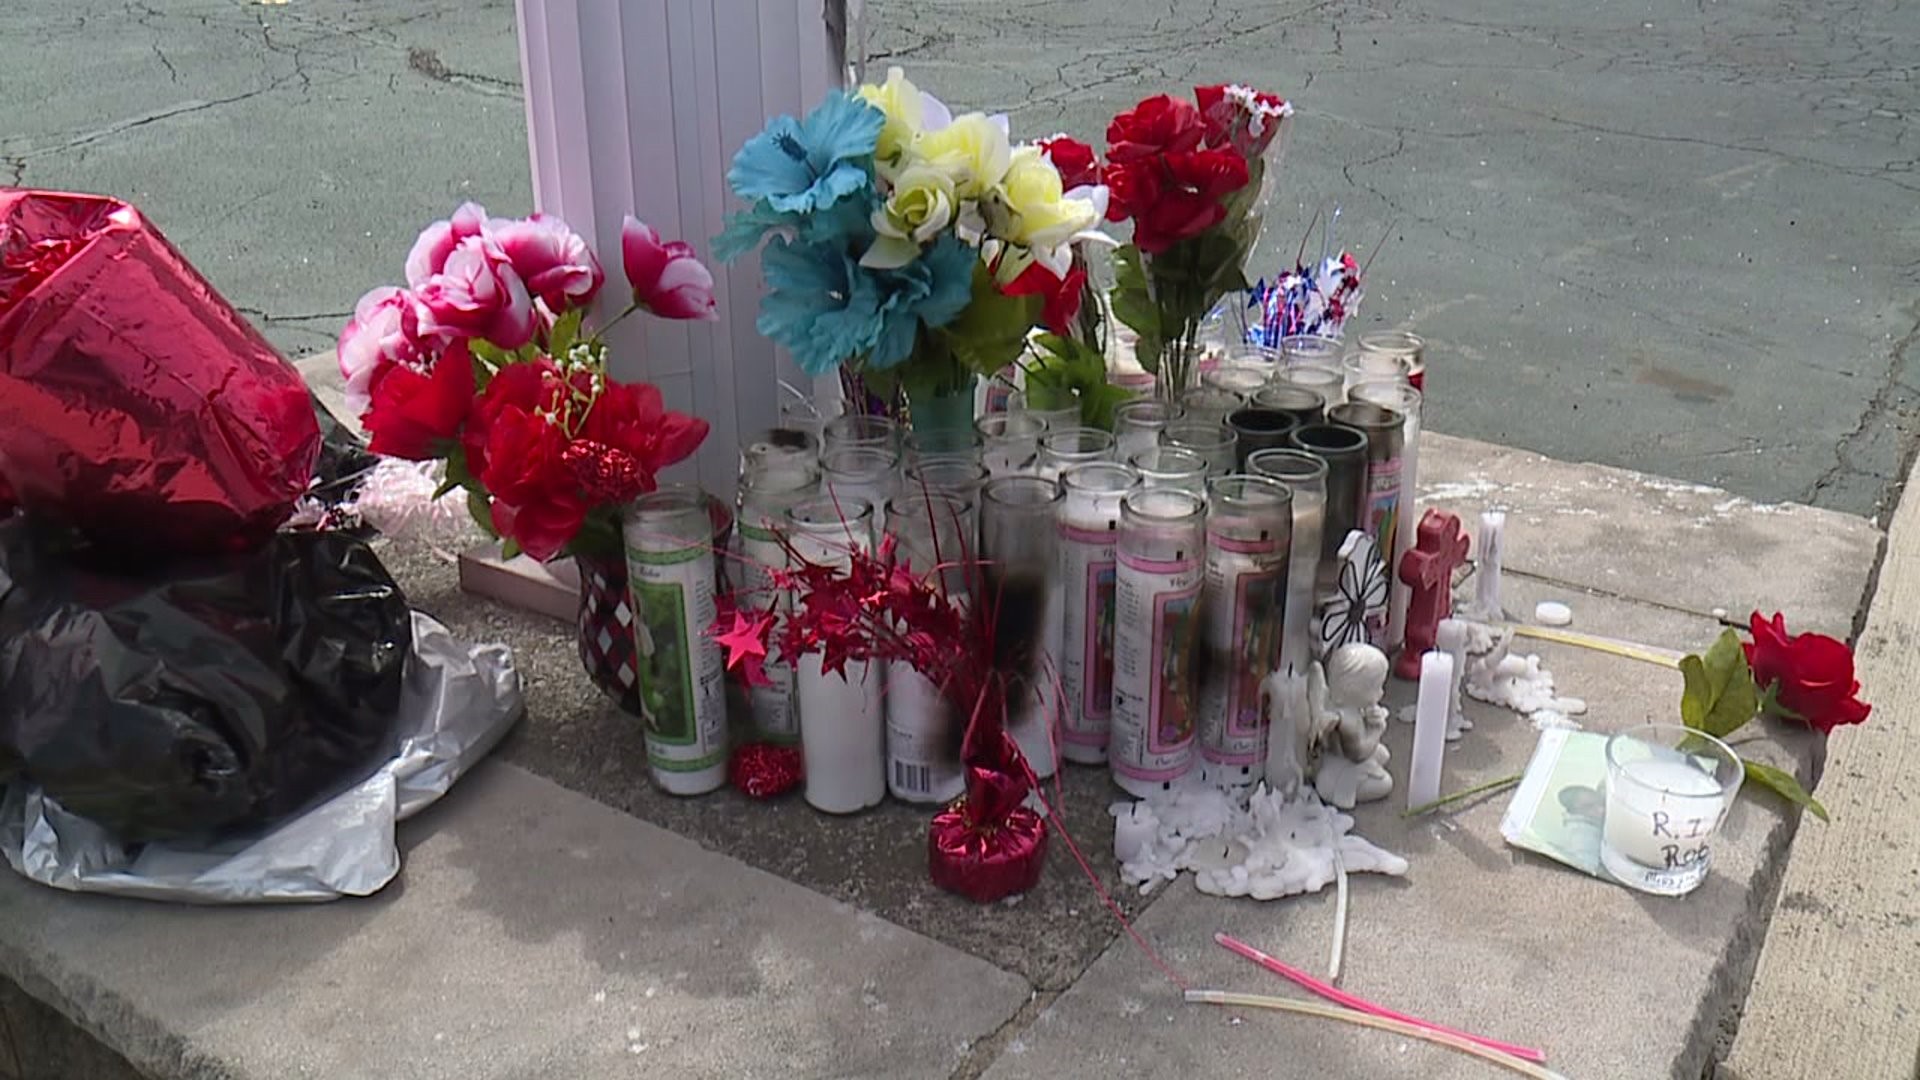 Memorial at Site of Deadly Crash in Scranton